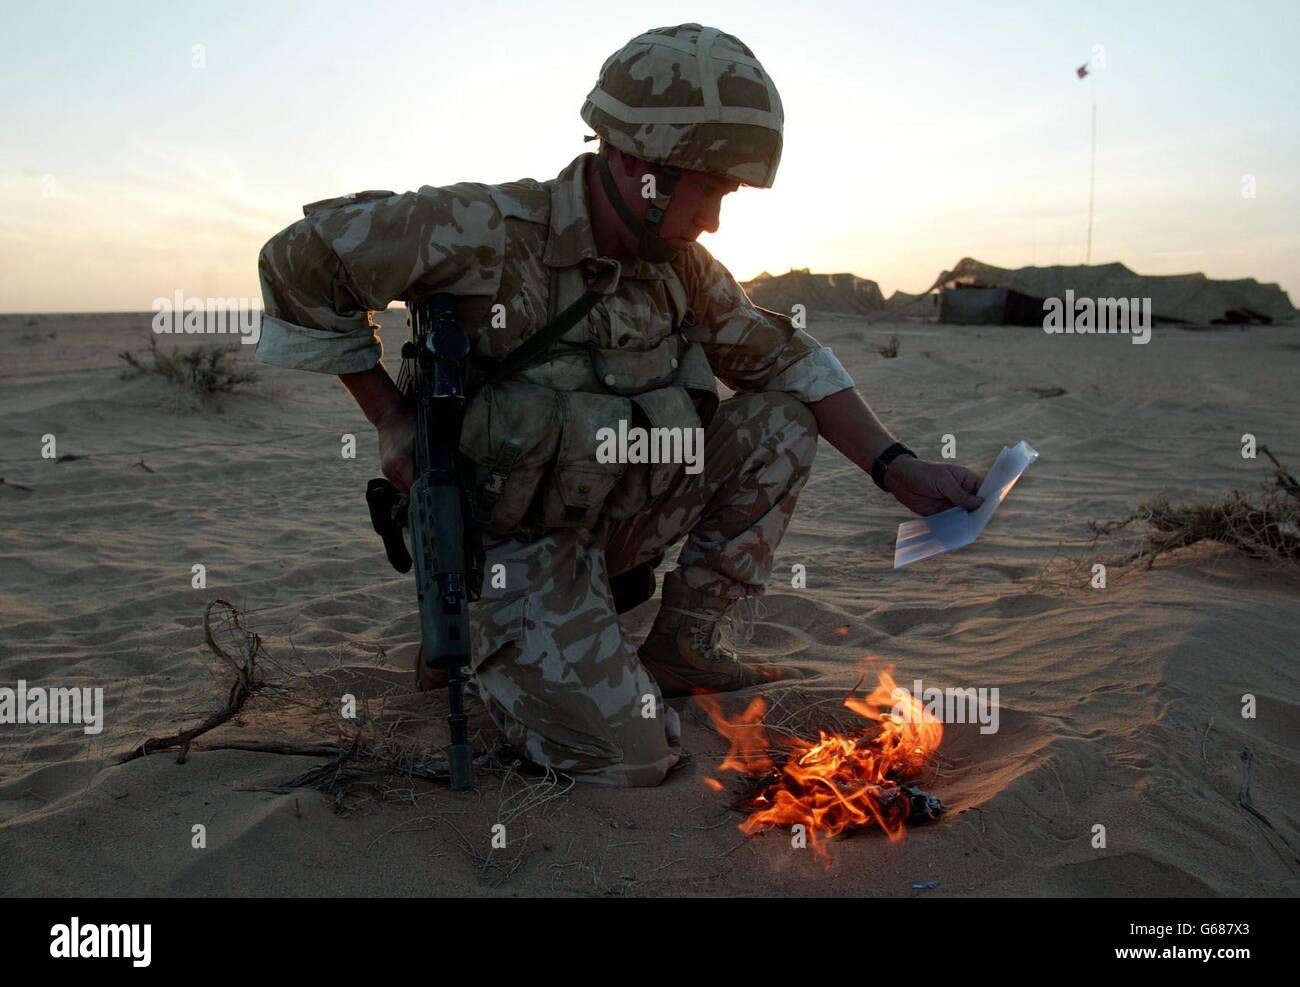 Ein Soldat des britischen 29 Commando Regiment Royal Artillery 'sanitises' sein Kit, indem er seine persönliche Post in der Kuwait-Wüste nahe der irakischen Grenze verbrennt. *..Truppen, die möglicherweise an zukünftigen Operationen beteiligt sind, desinfizieren ihre Ausrüstung, um keine Effekte einzuschließen, die dem Feind helfen könnten. Während sich die Streitkräfte in den Golfstaaten auf den Krieg zurüsten, wird US-Präsident Bush am Sonntag mit den britischen und spanischen Premierministern zusammentreffen, inmitten einer diplomatischen Sackgasse vor den Vereinten Nationen wegen der von den USA geführten Pläne zur Entwaffnung des Irak. Stockfoto